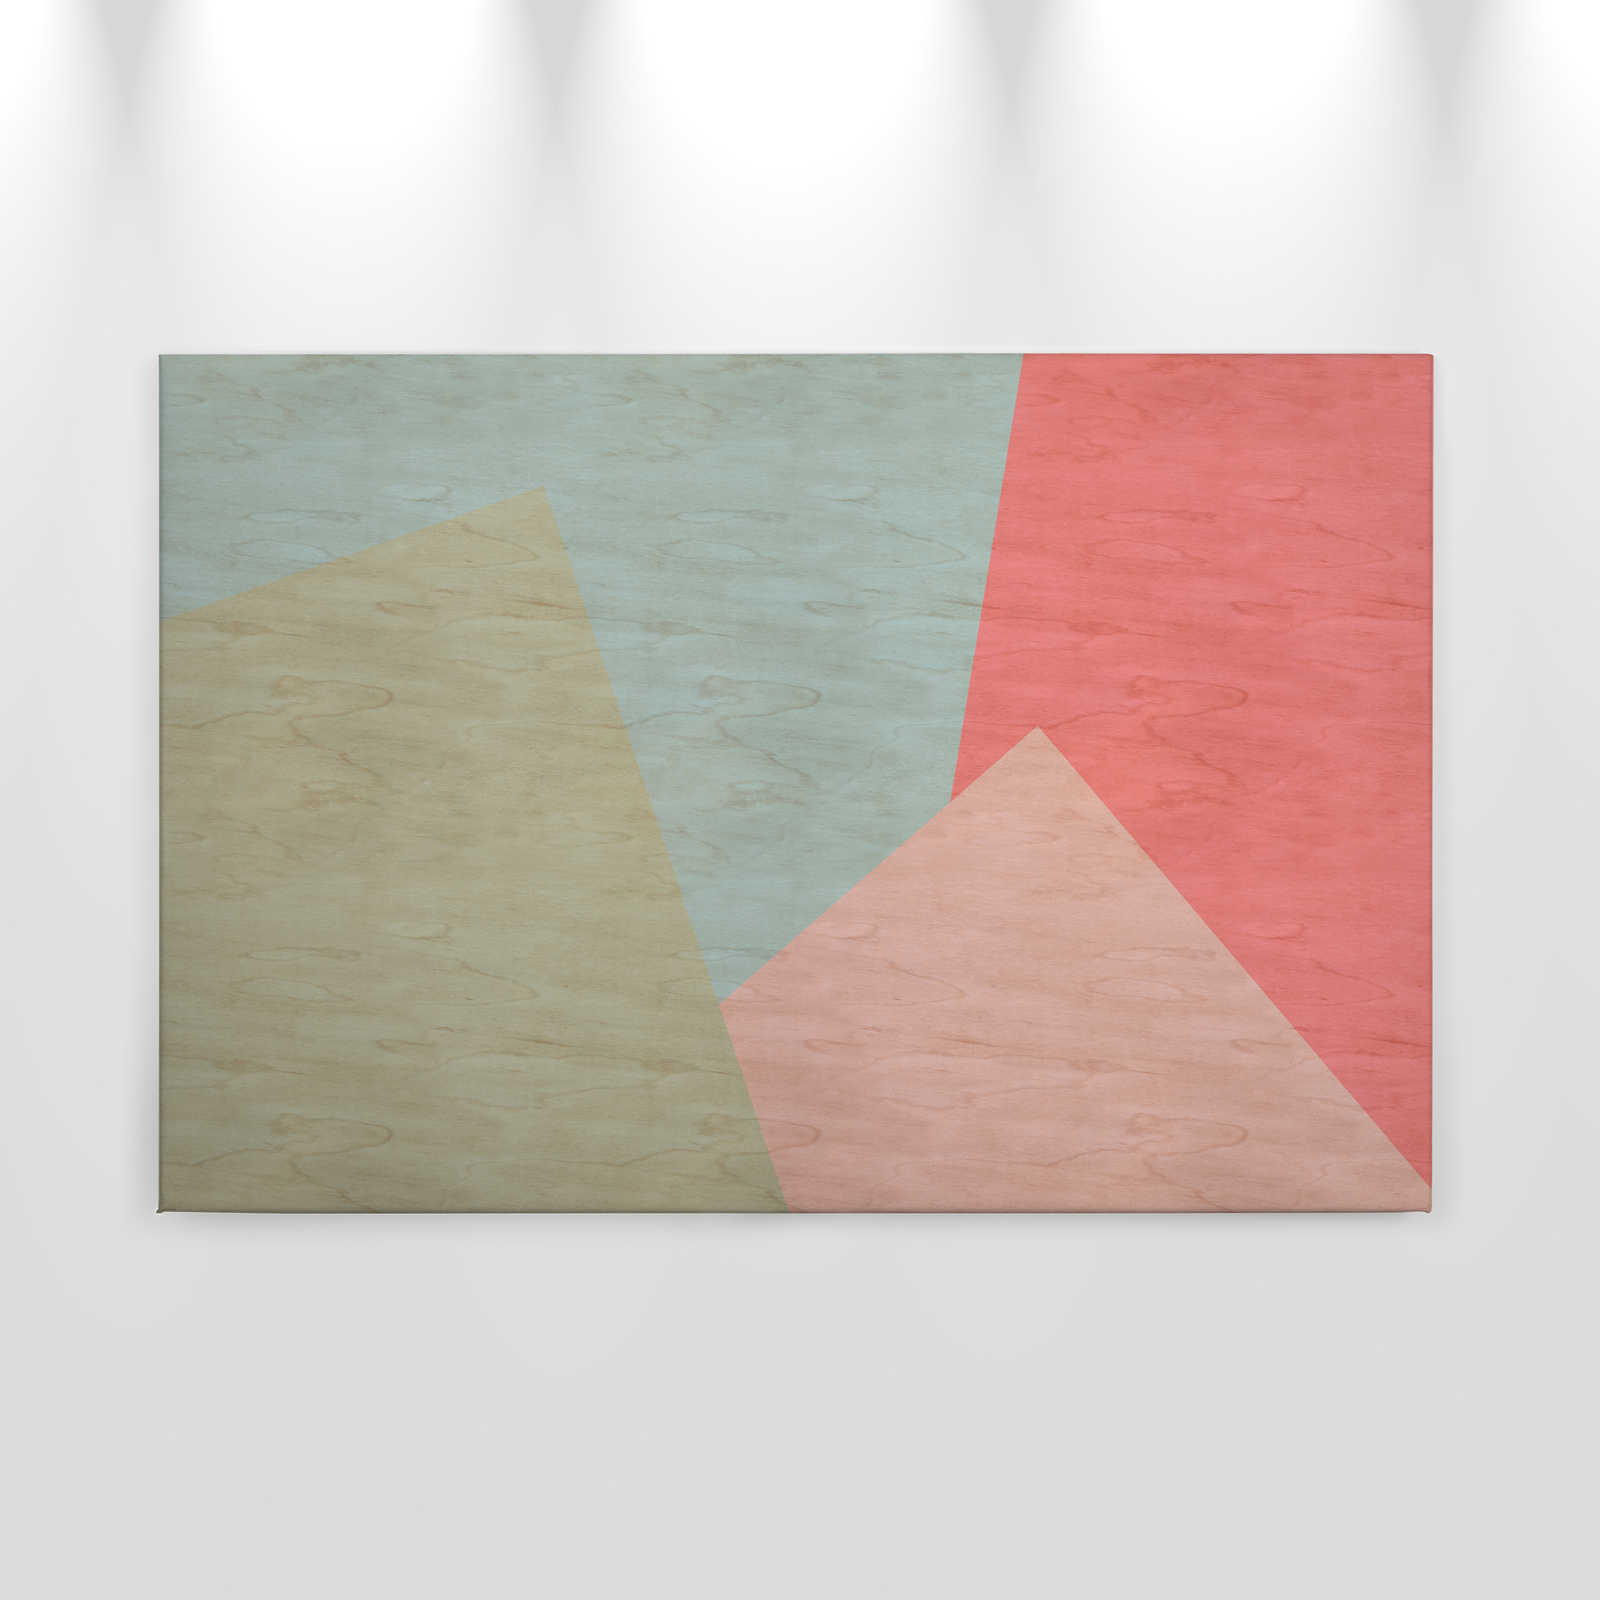             Inaly 2 - Tableau abstrait coloré sur toile en structure contreplaquée - 0,90 m x 0,60 m
        